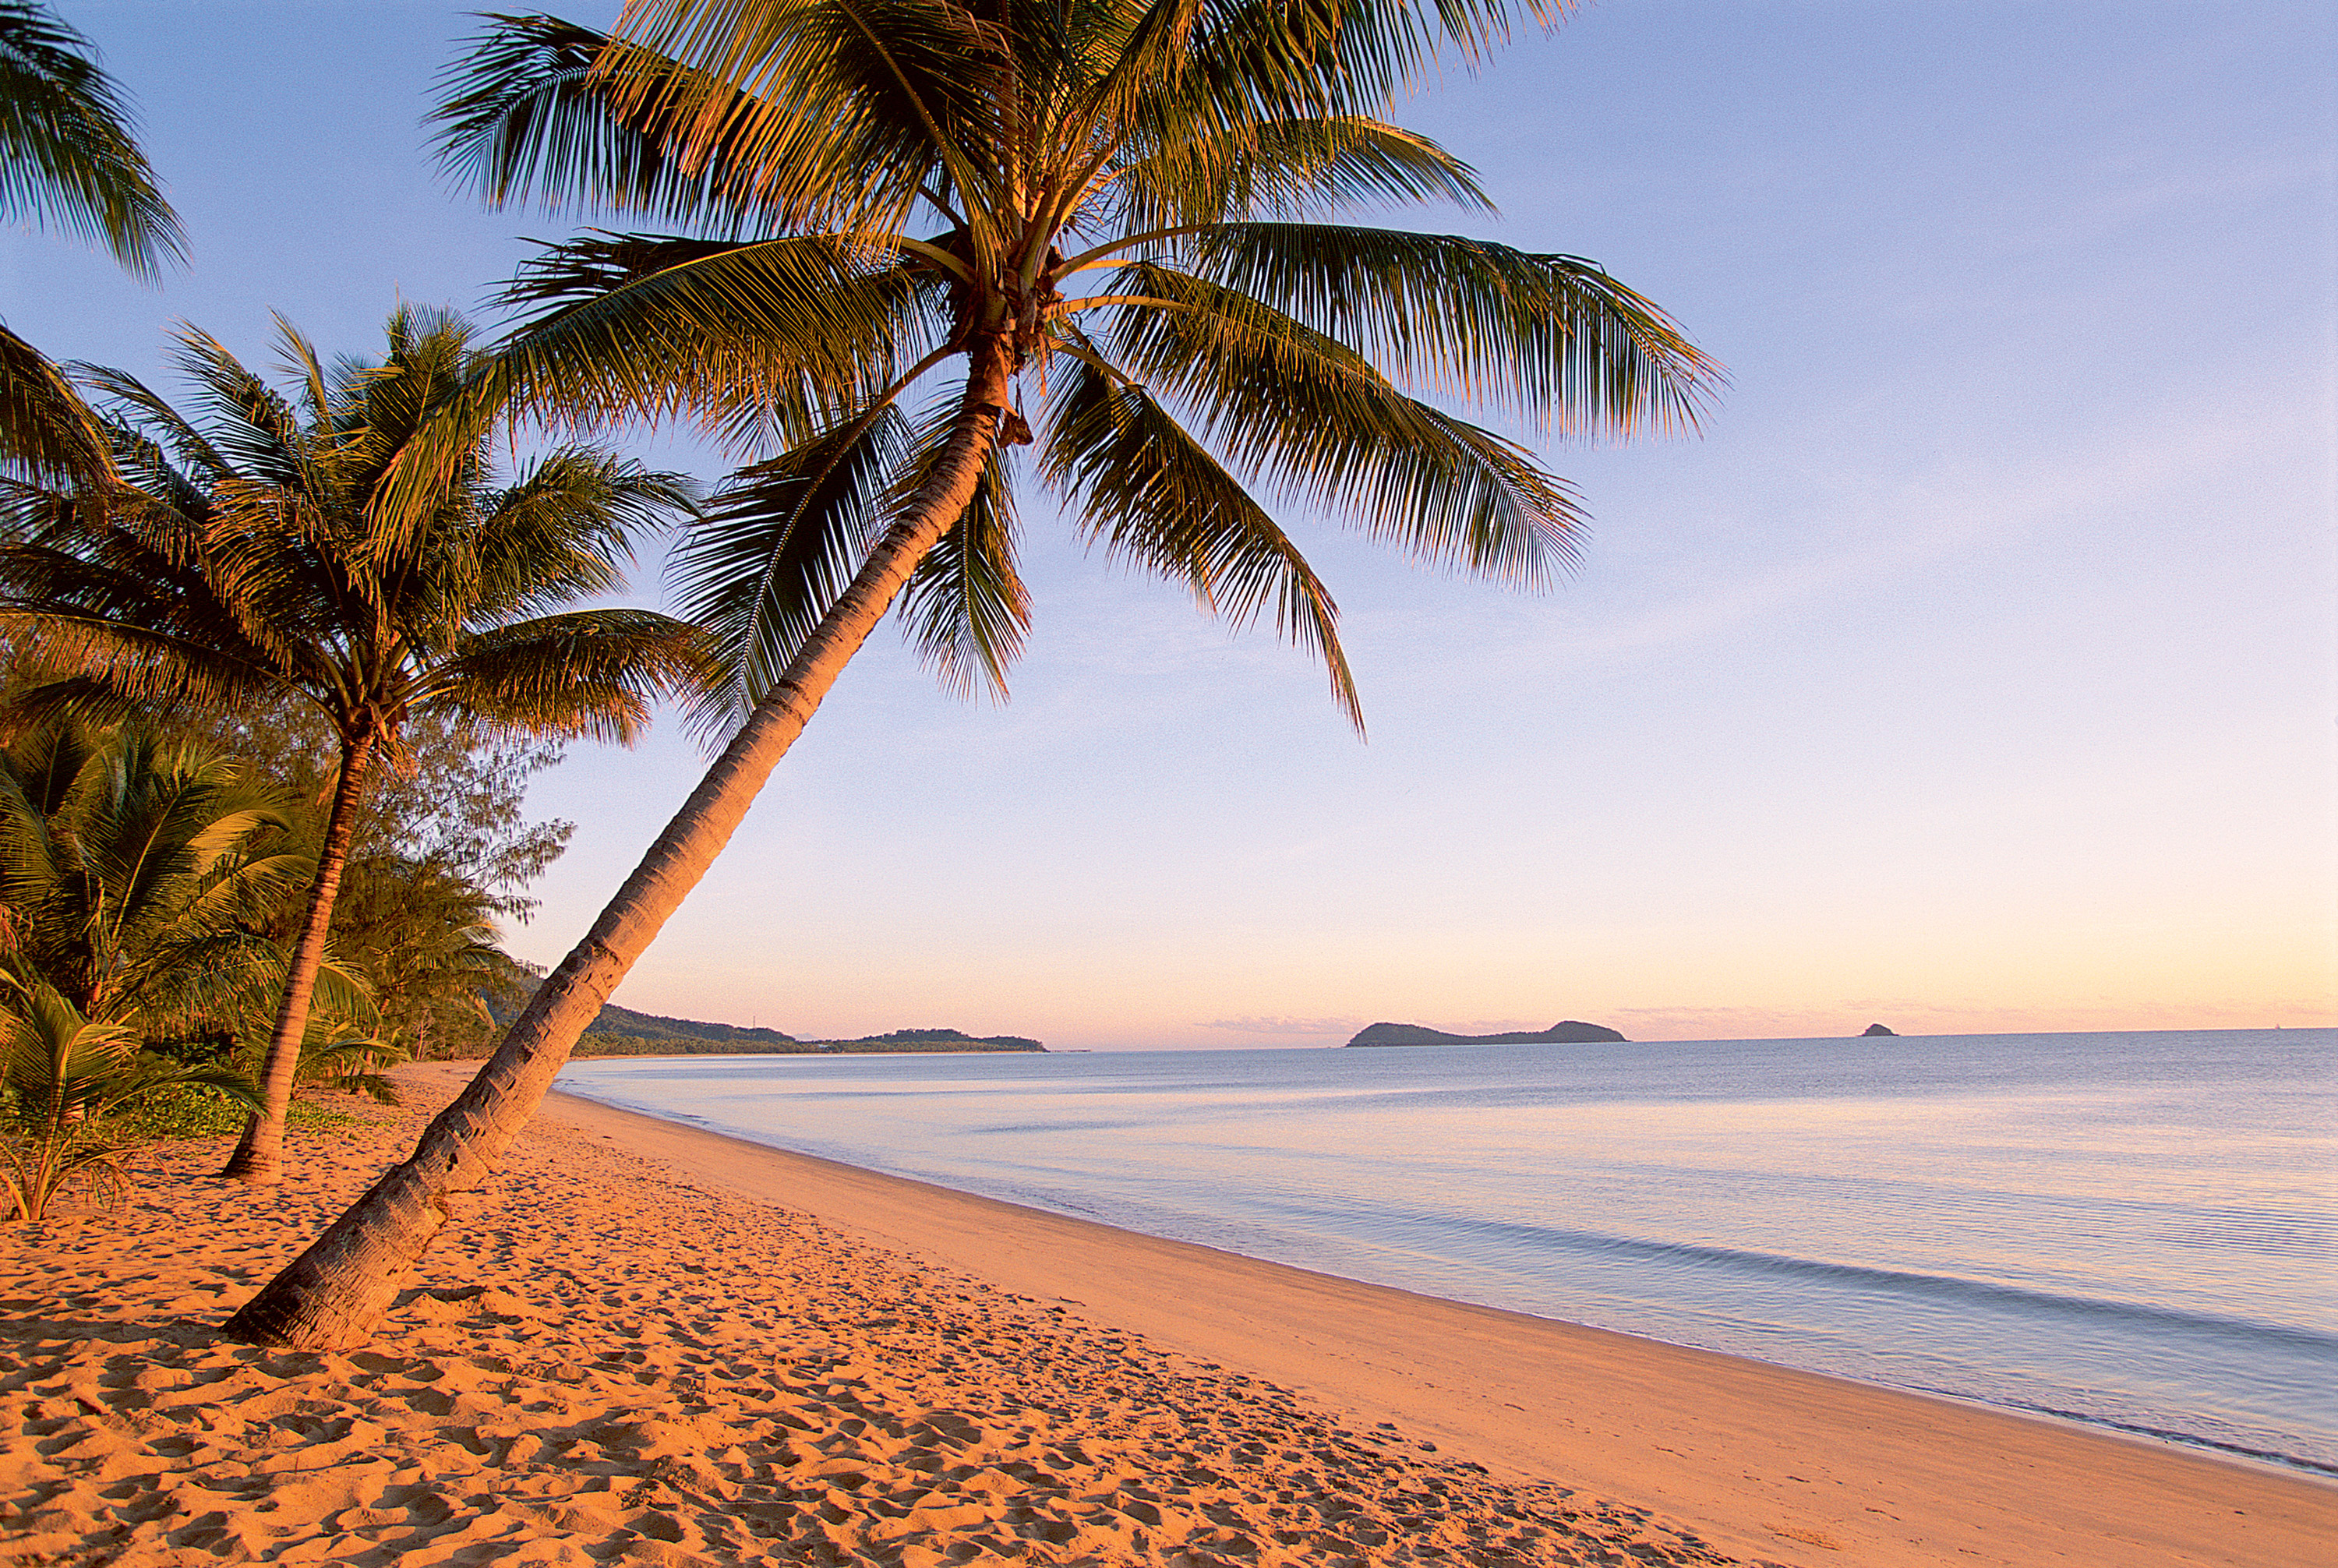 Beach tree. Пальмы песок. Побережье с пальмами. Пляж с пальмами. Берег моря пальмы.